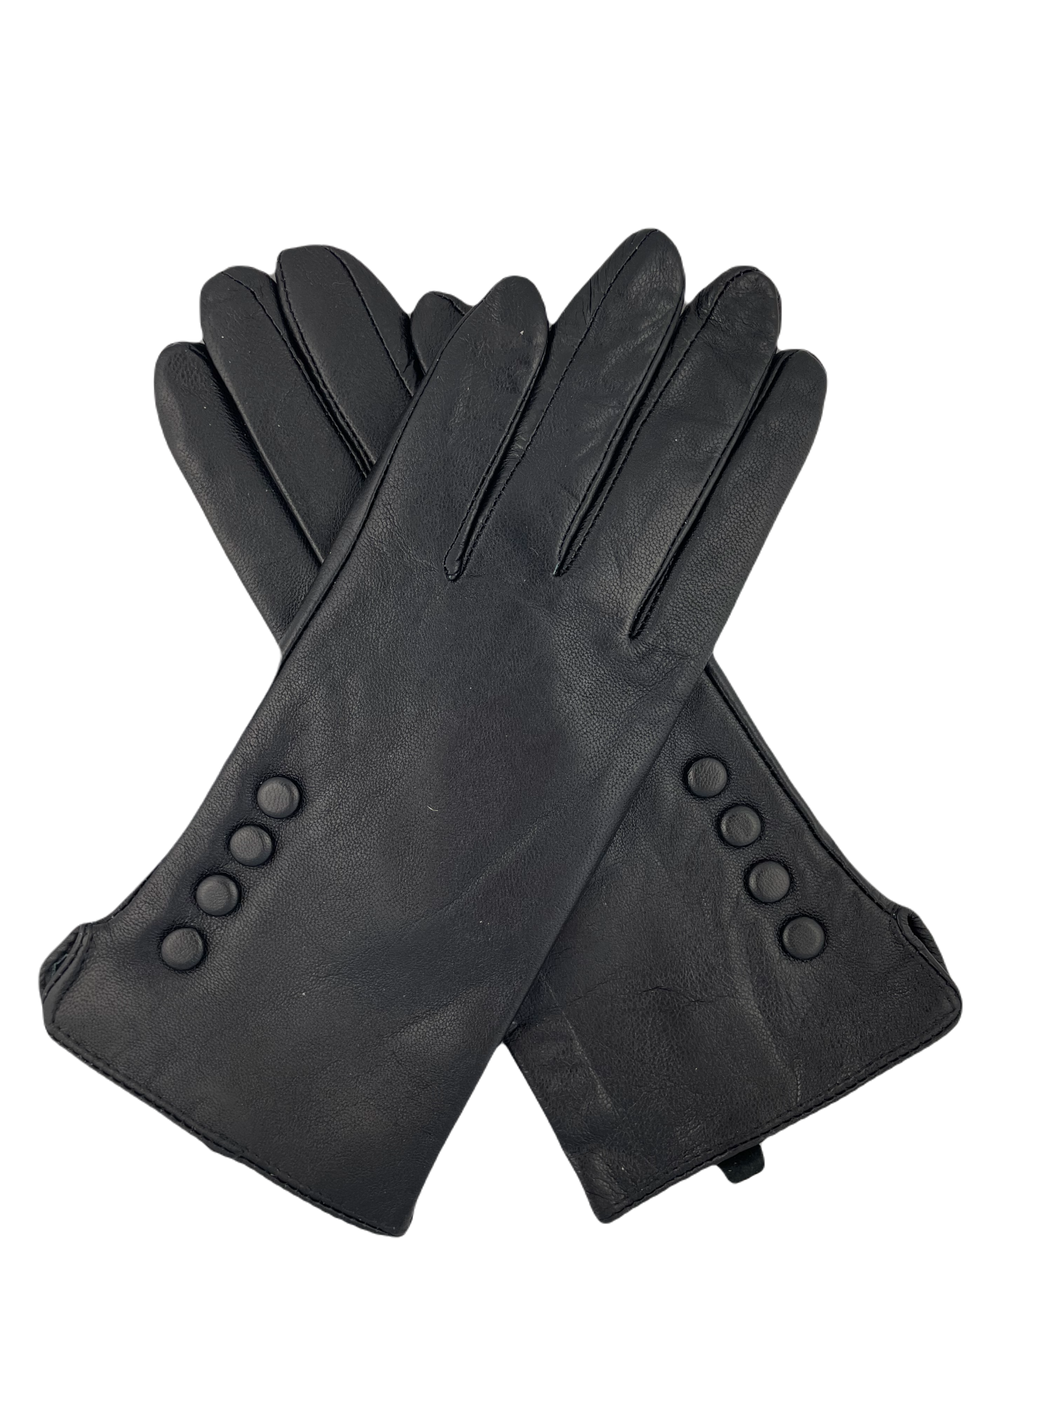 Echte lederen handschoenen uit Italië, met kleine knoopjes als leuk detail. Deze handschoenen zijn verkrijgbaar in verschillende maten, ze vallen redelijk klein.